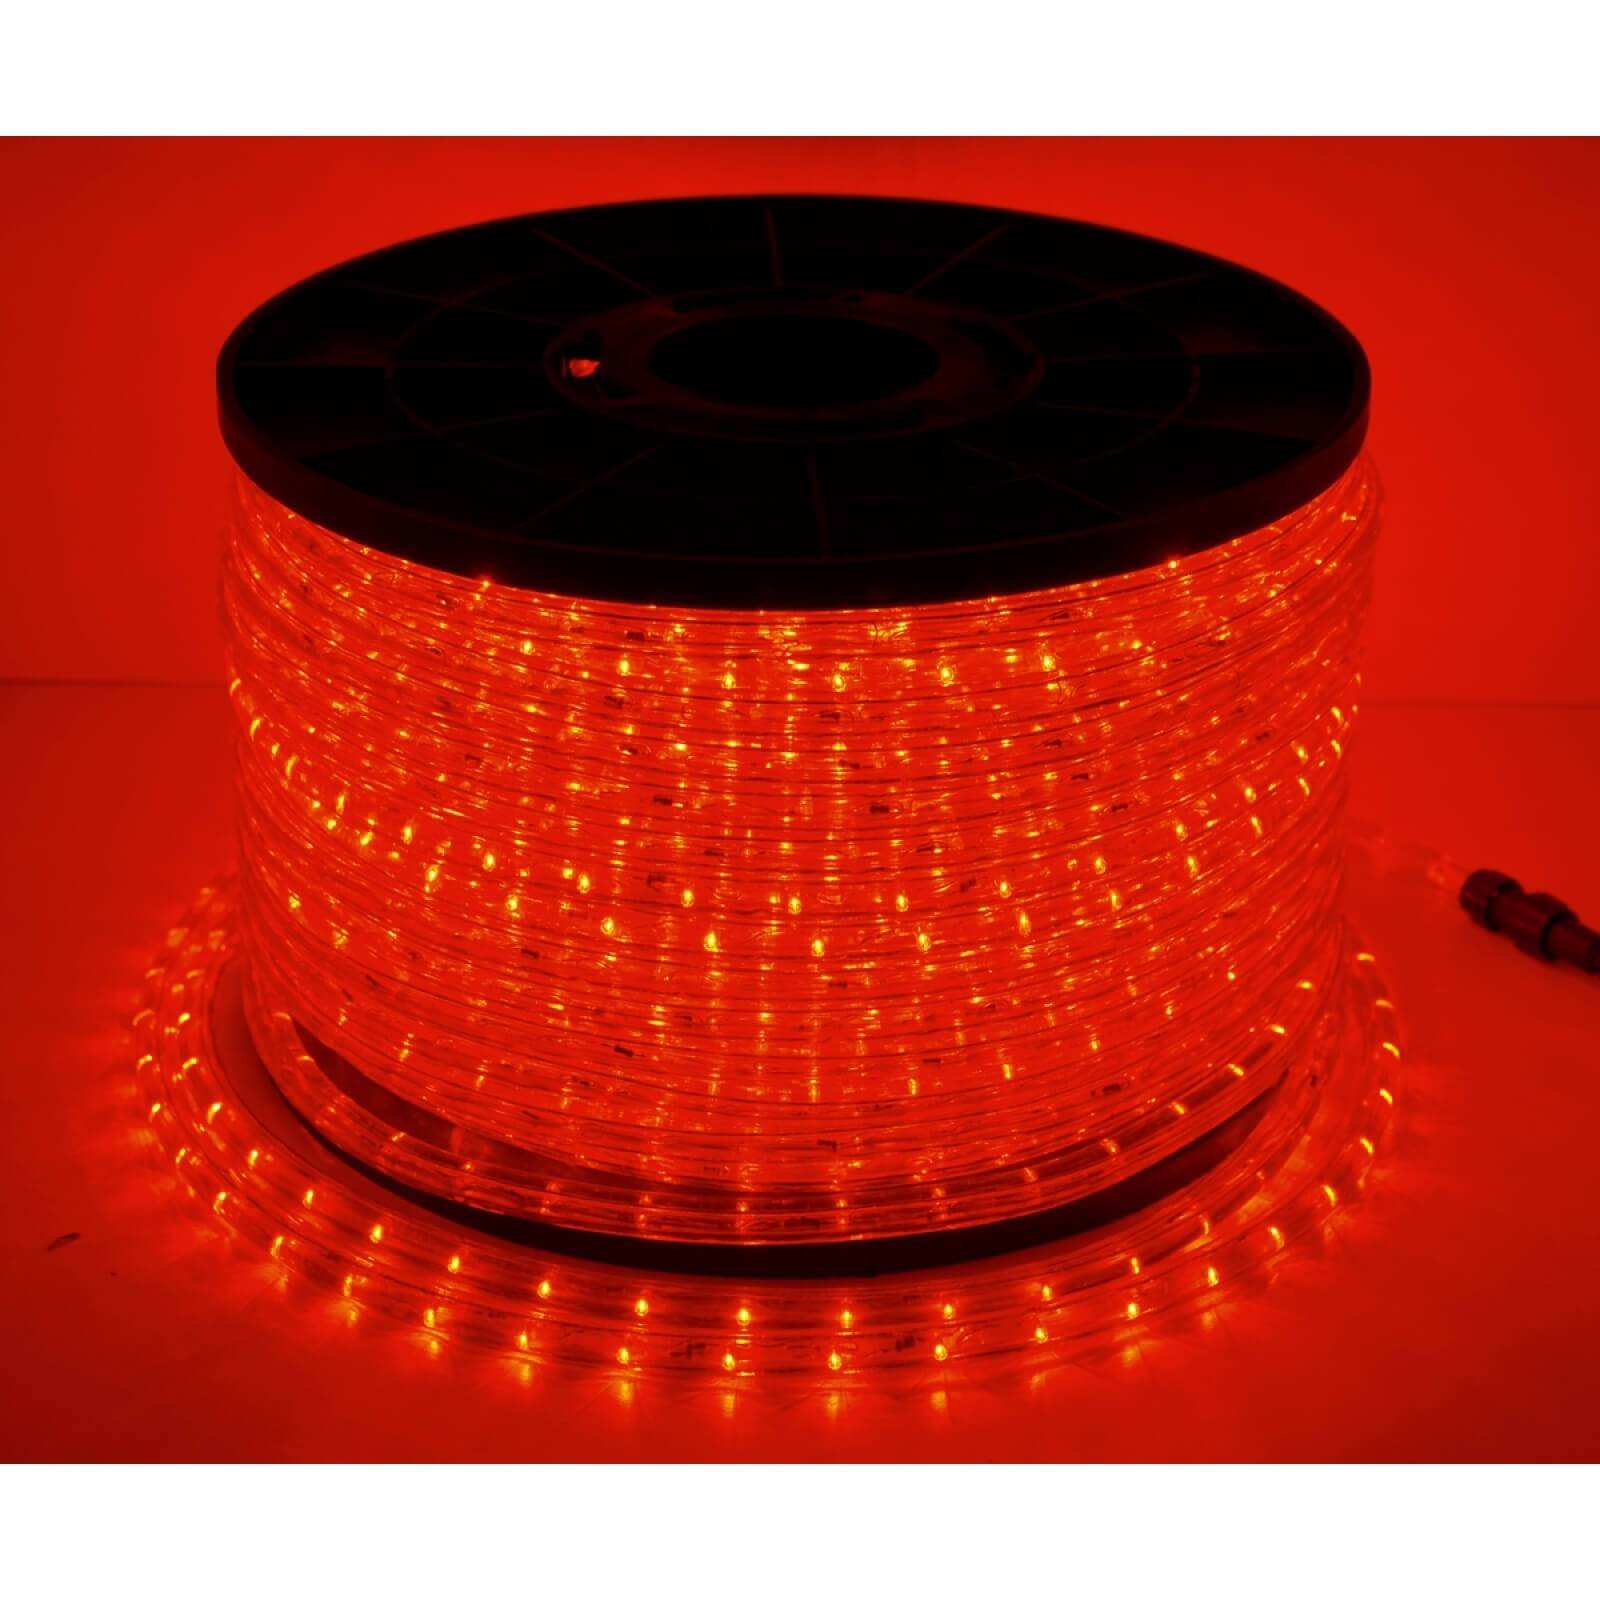 Cordon lumineux LED : Devis sur Techni-Contact - Illumination noël